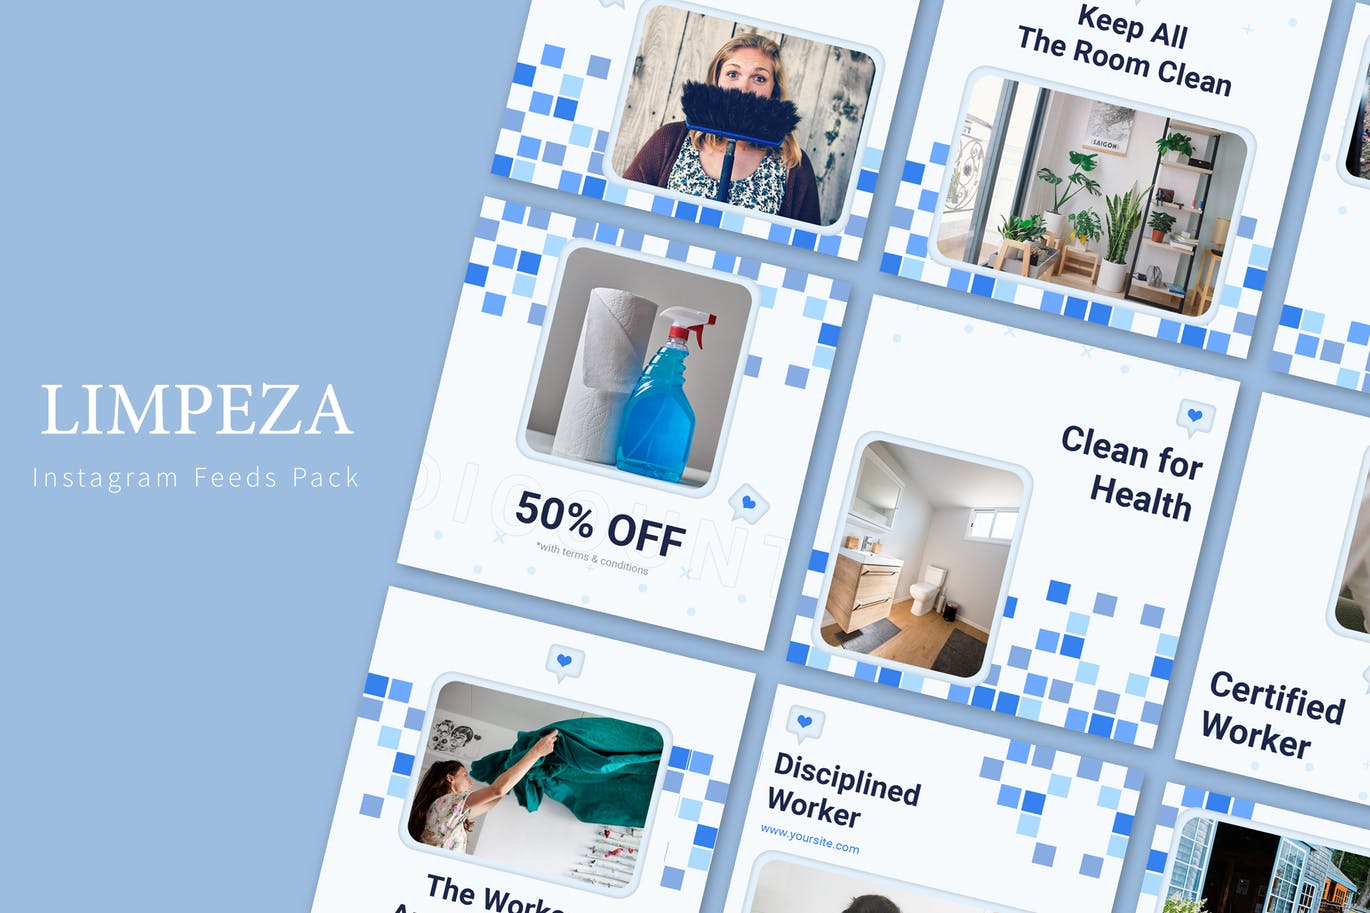 蓝色小方格背景Instagram信息流贴图设计模板第一素材精选 Limpeza – Instagram Feeds Pack插图